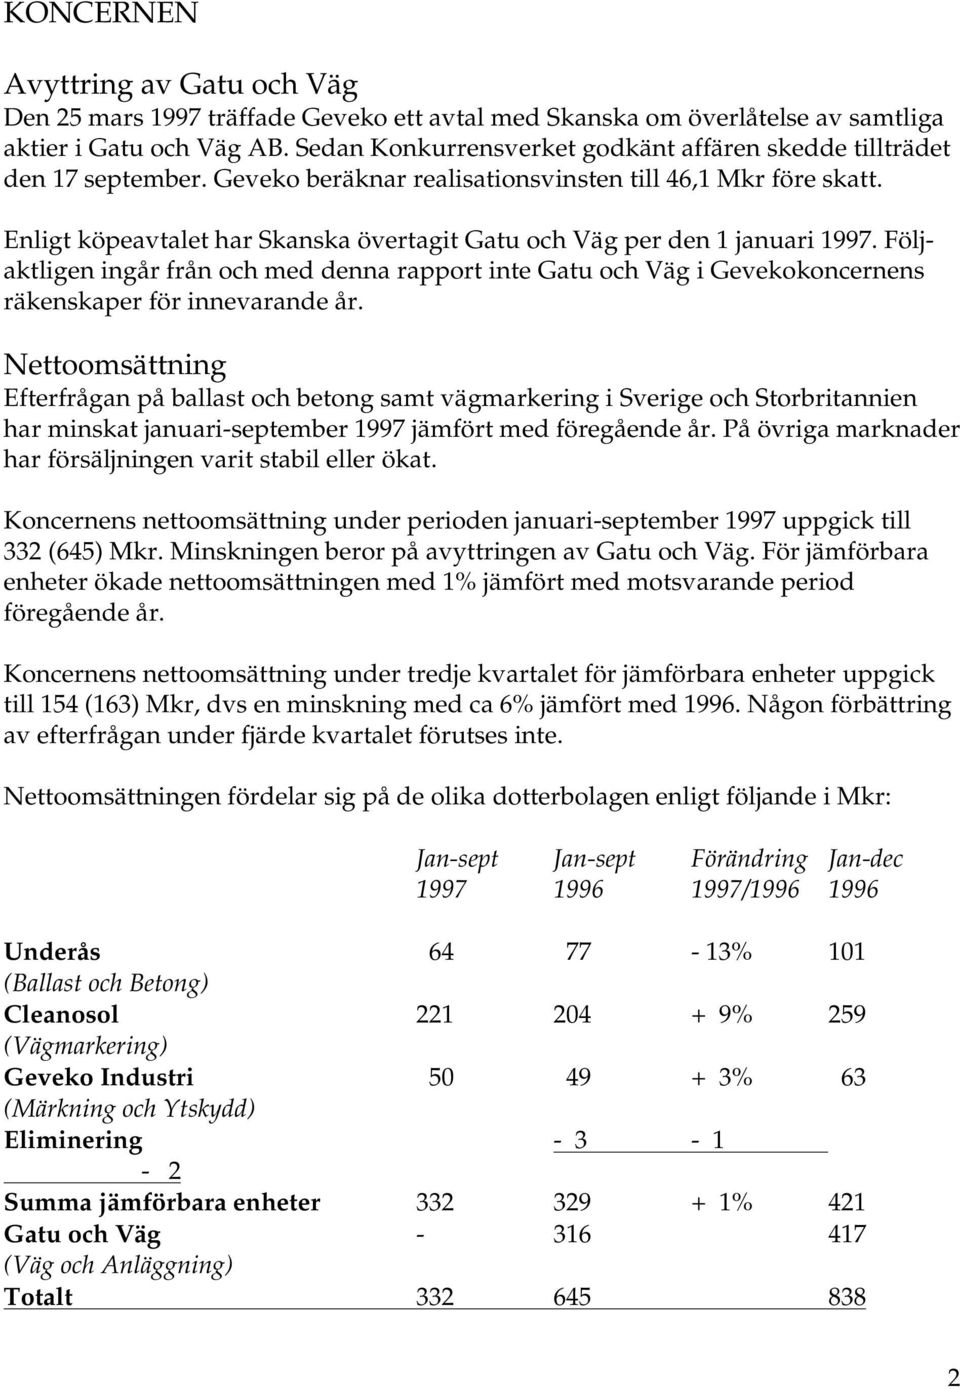 Enligt köpeavtalet har Skanska övertagit Gatu och Väg per den 1 januari 1997. Följaktligen ingår från och med denna rapport inte Gatu och Väg i Gevekokoncernens räkenskaper för innevarande år.